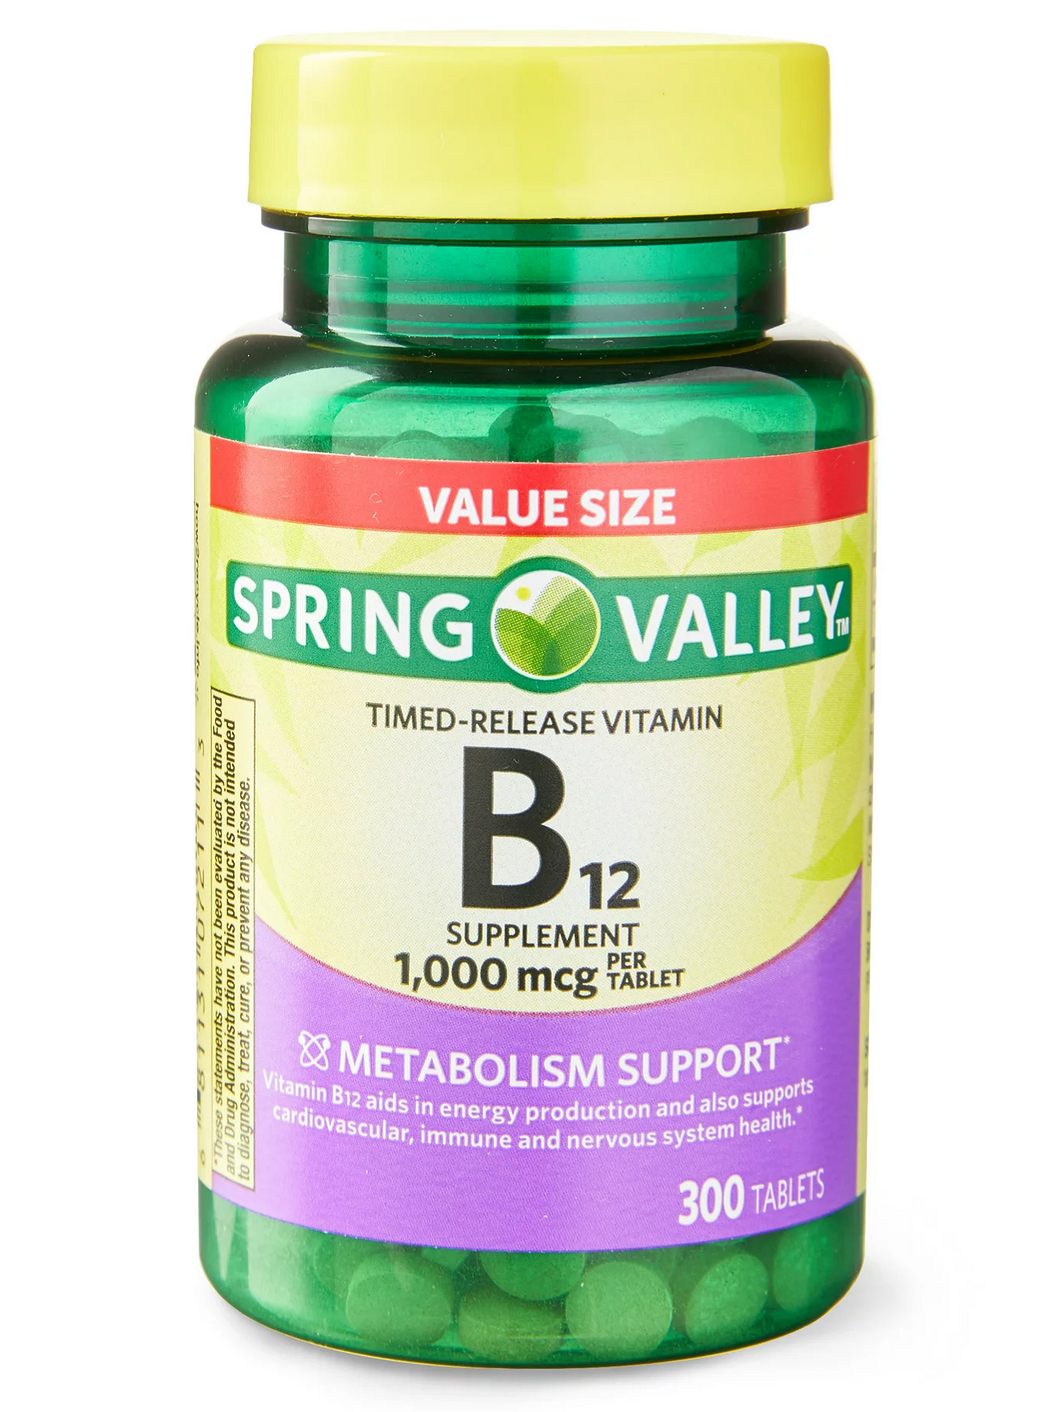 Vitamina B12, 1000 mcg, Spring Valley. Varios tamaños disponibles.